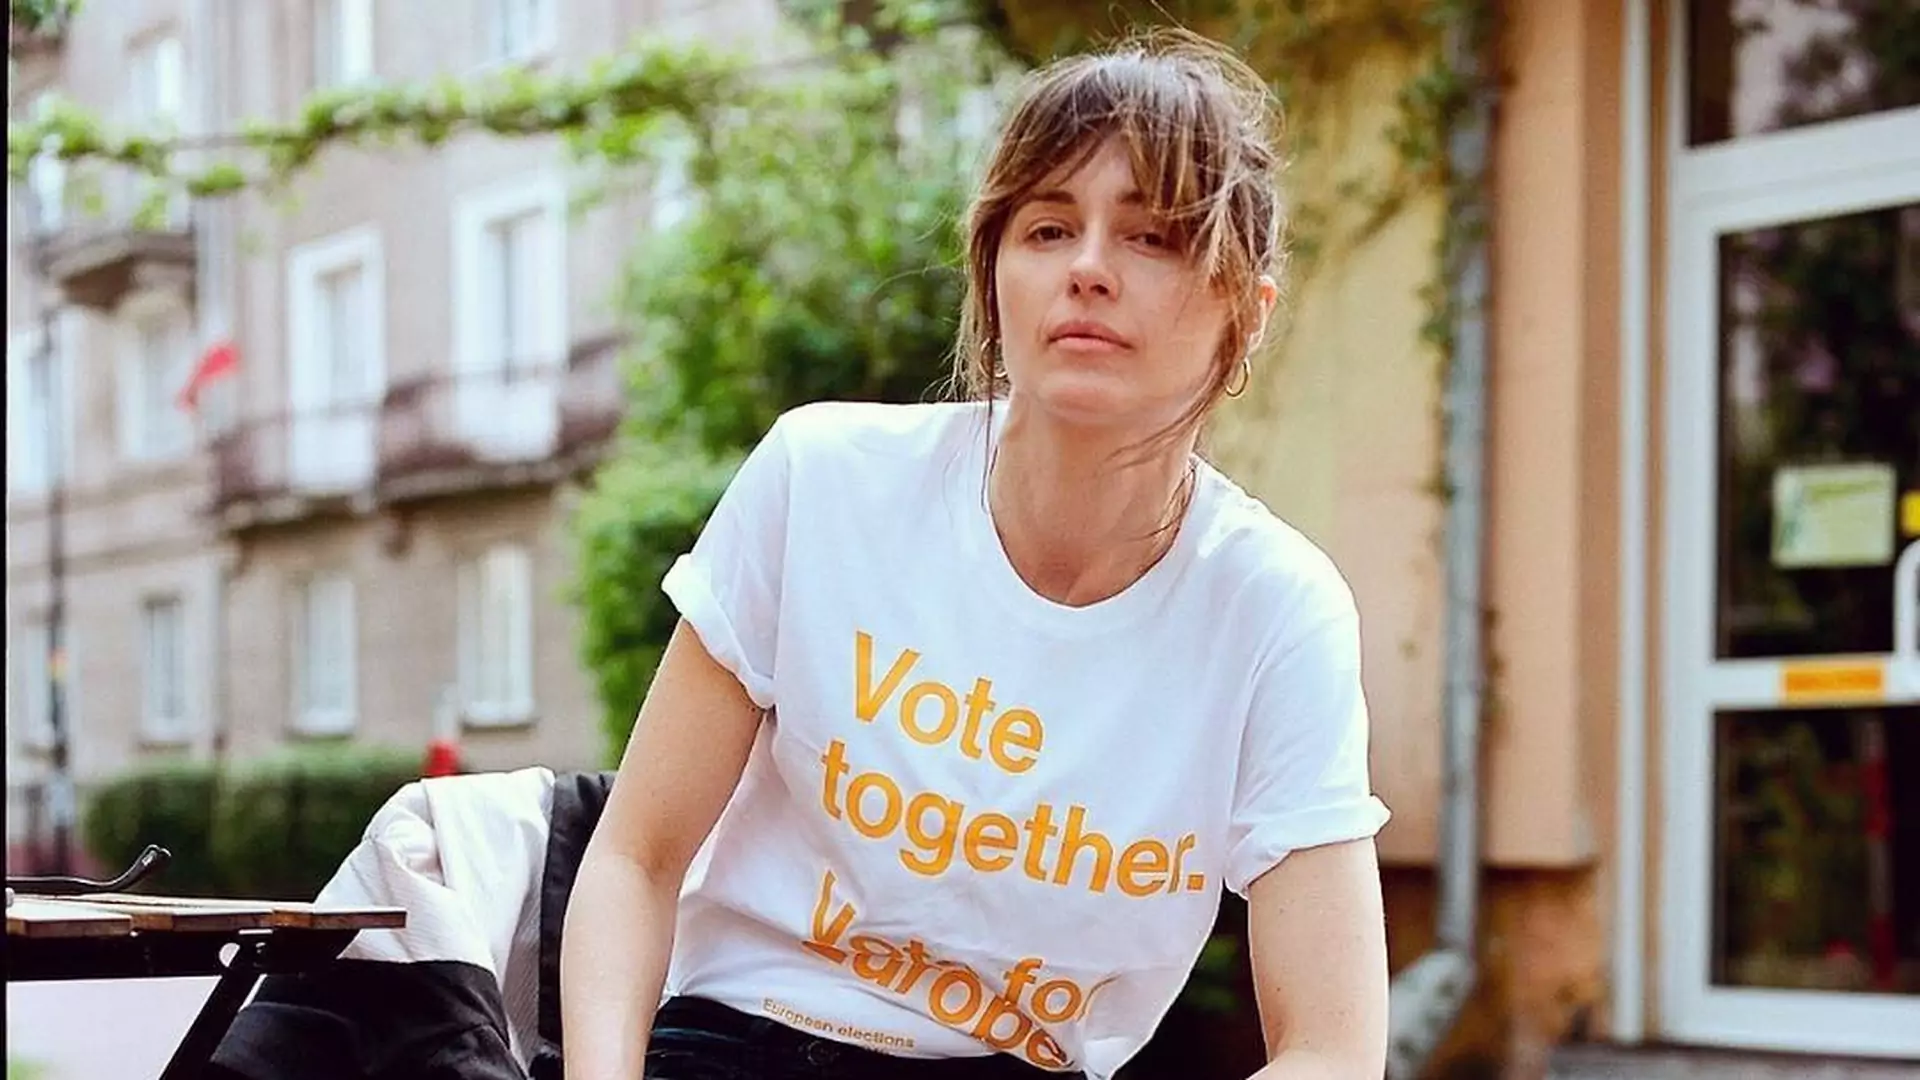 "Więcej ludzi będzie grillowało niż głosowało" - projekt "Vote Together EU" może to zmienić